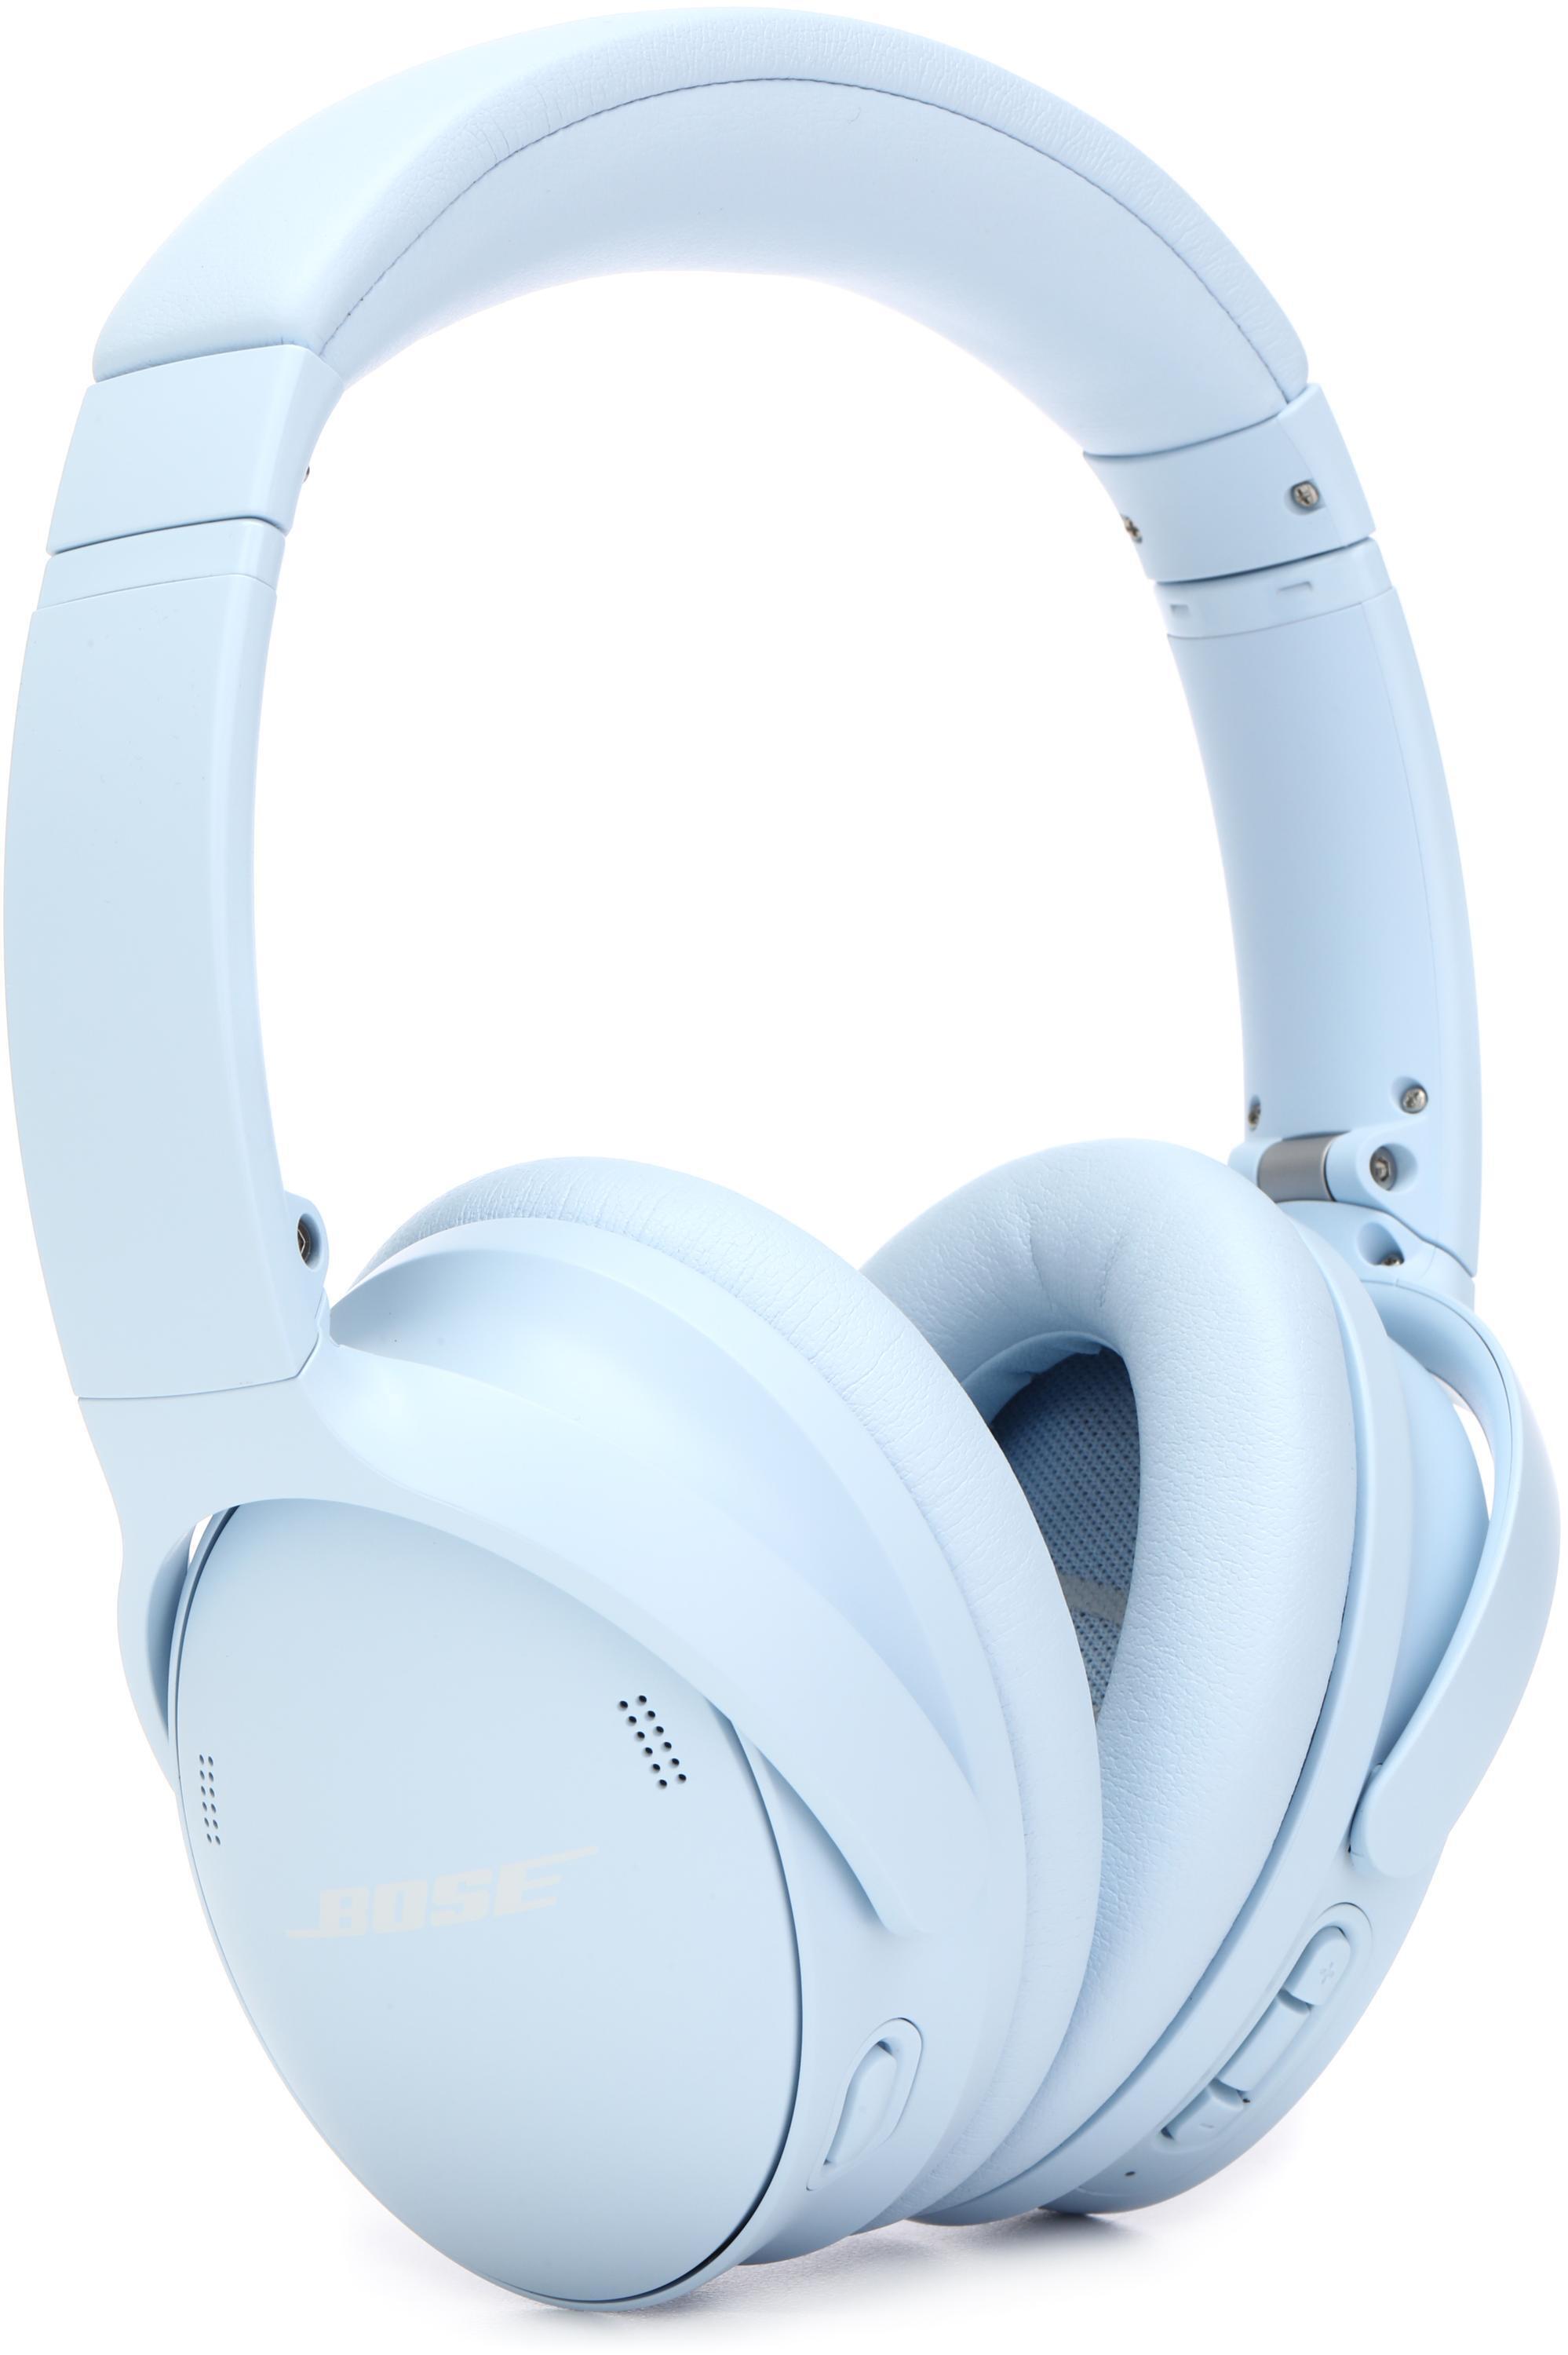 Bose QuietComfort Headphones - Moonstone Blue | Sweetwater